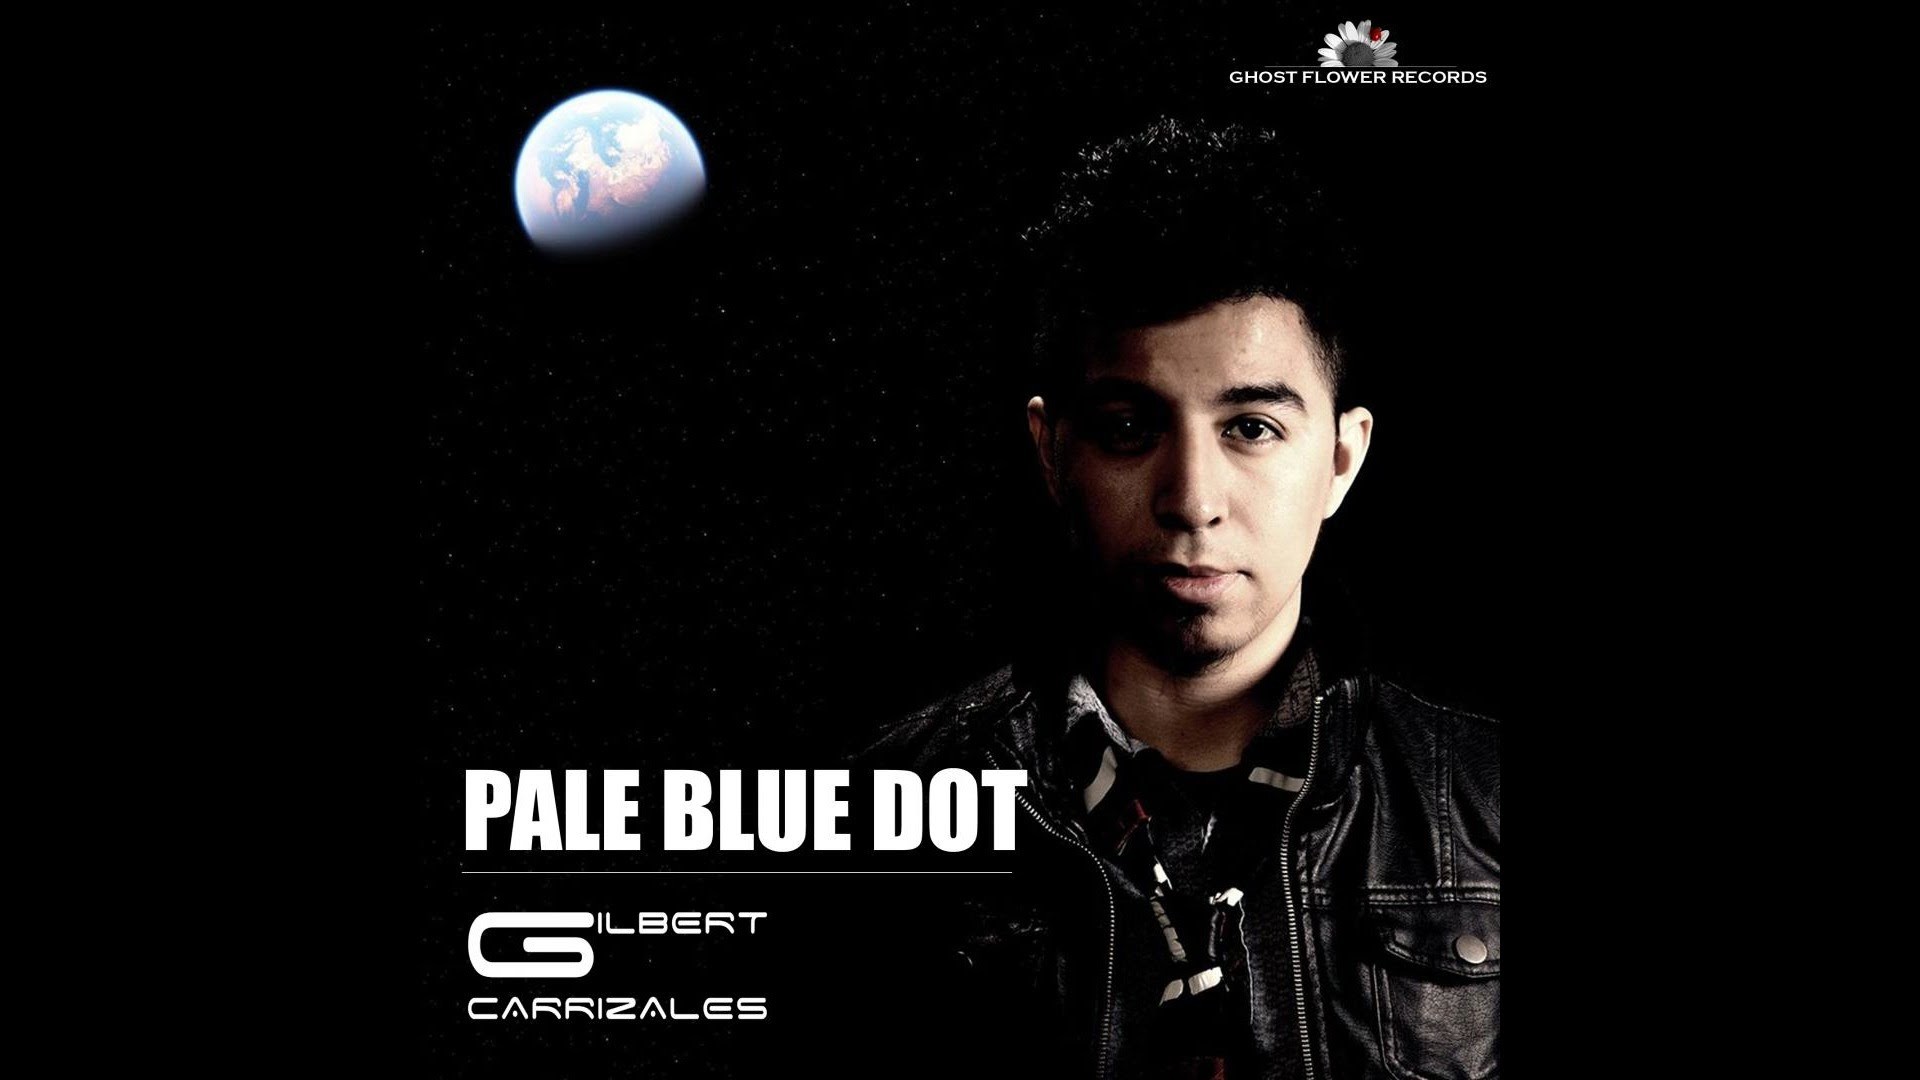 1920x1080 Gilbert Carrizales - Pale Blue Dot [Trance]